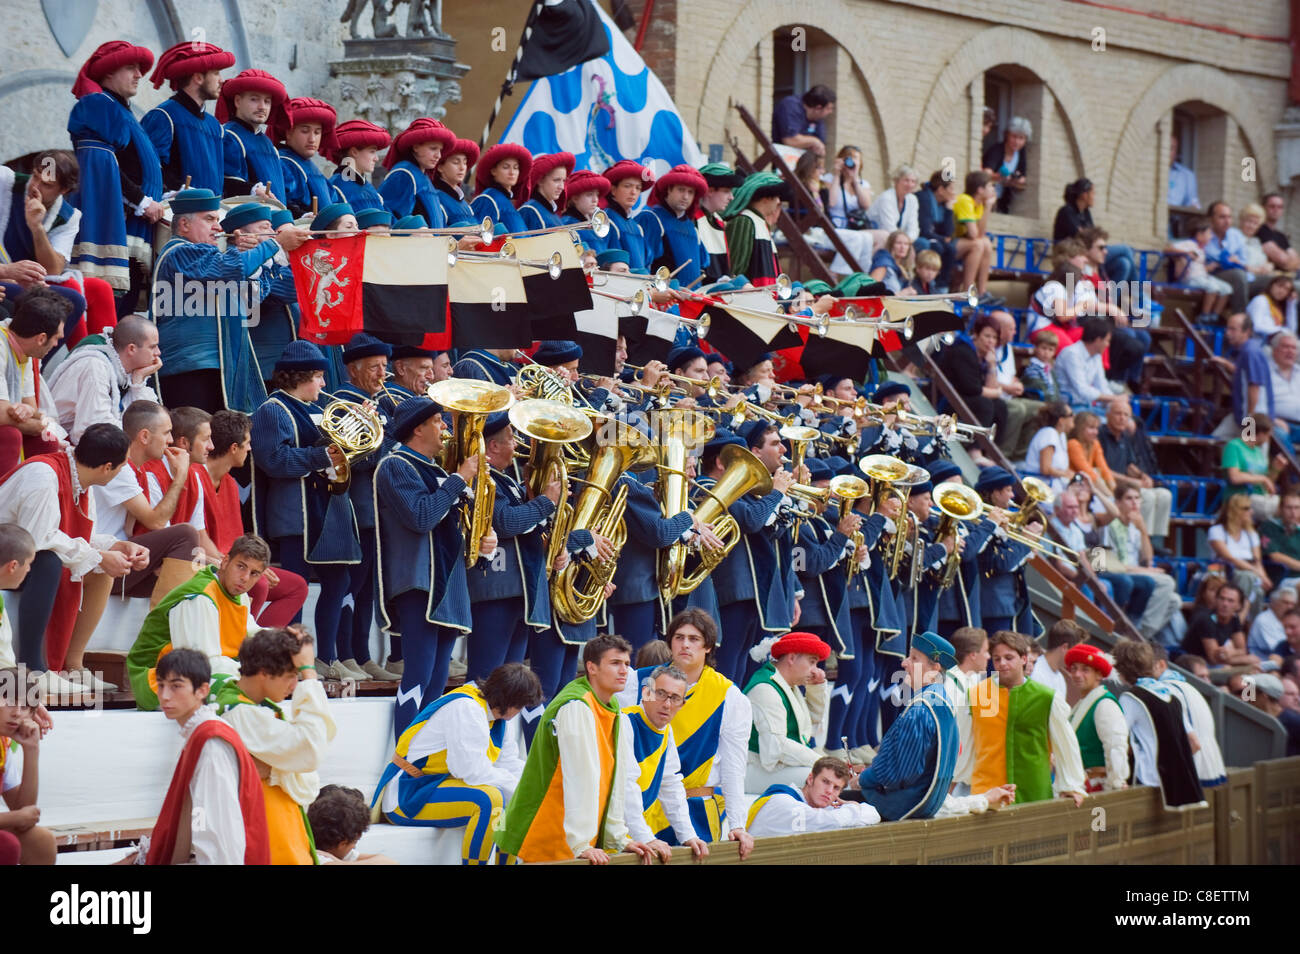 Banda di ottoni giocando a El Palio festival, Piazza del Campo a Siena, Toscana, Italia Foto Stock